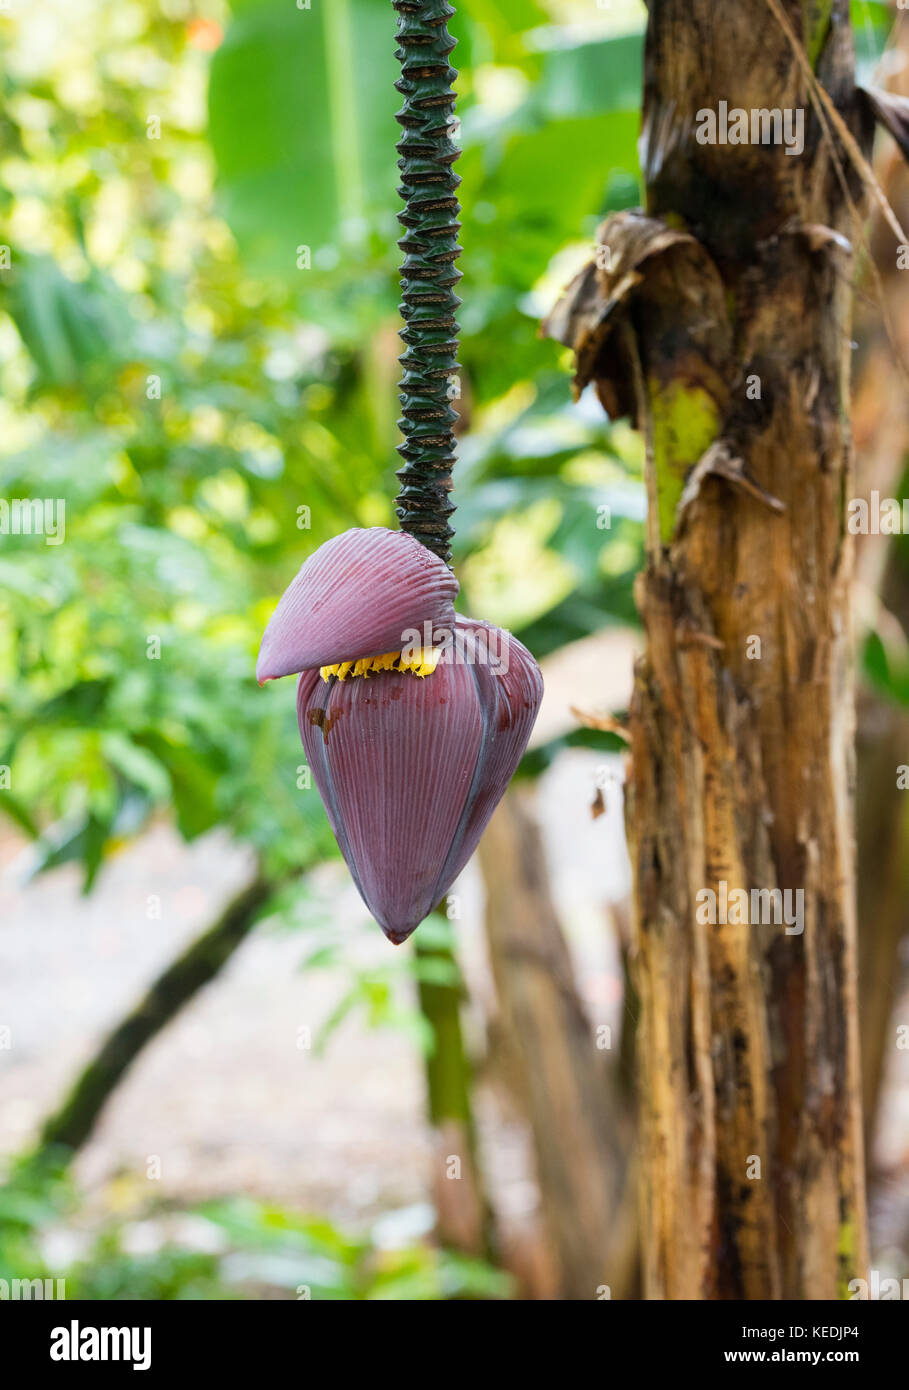 L'impiccagione corm, banana cuore e pseudostem rigata, delle piante di banana Foto Stock